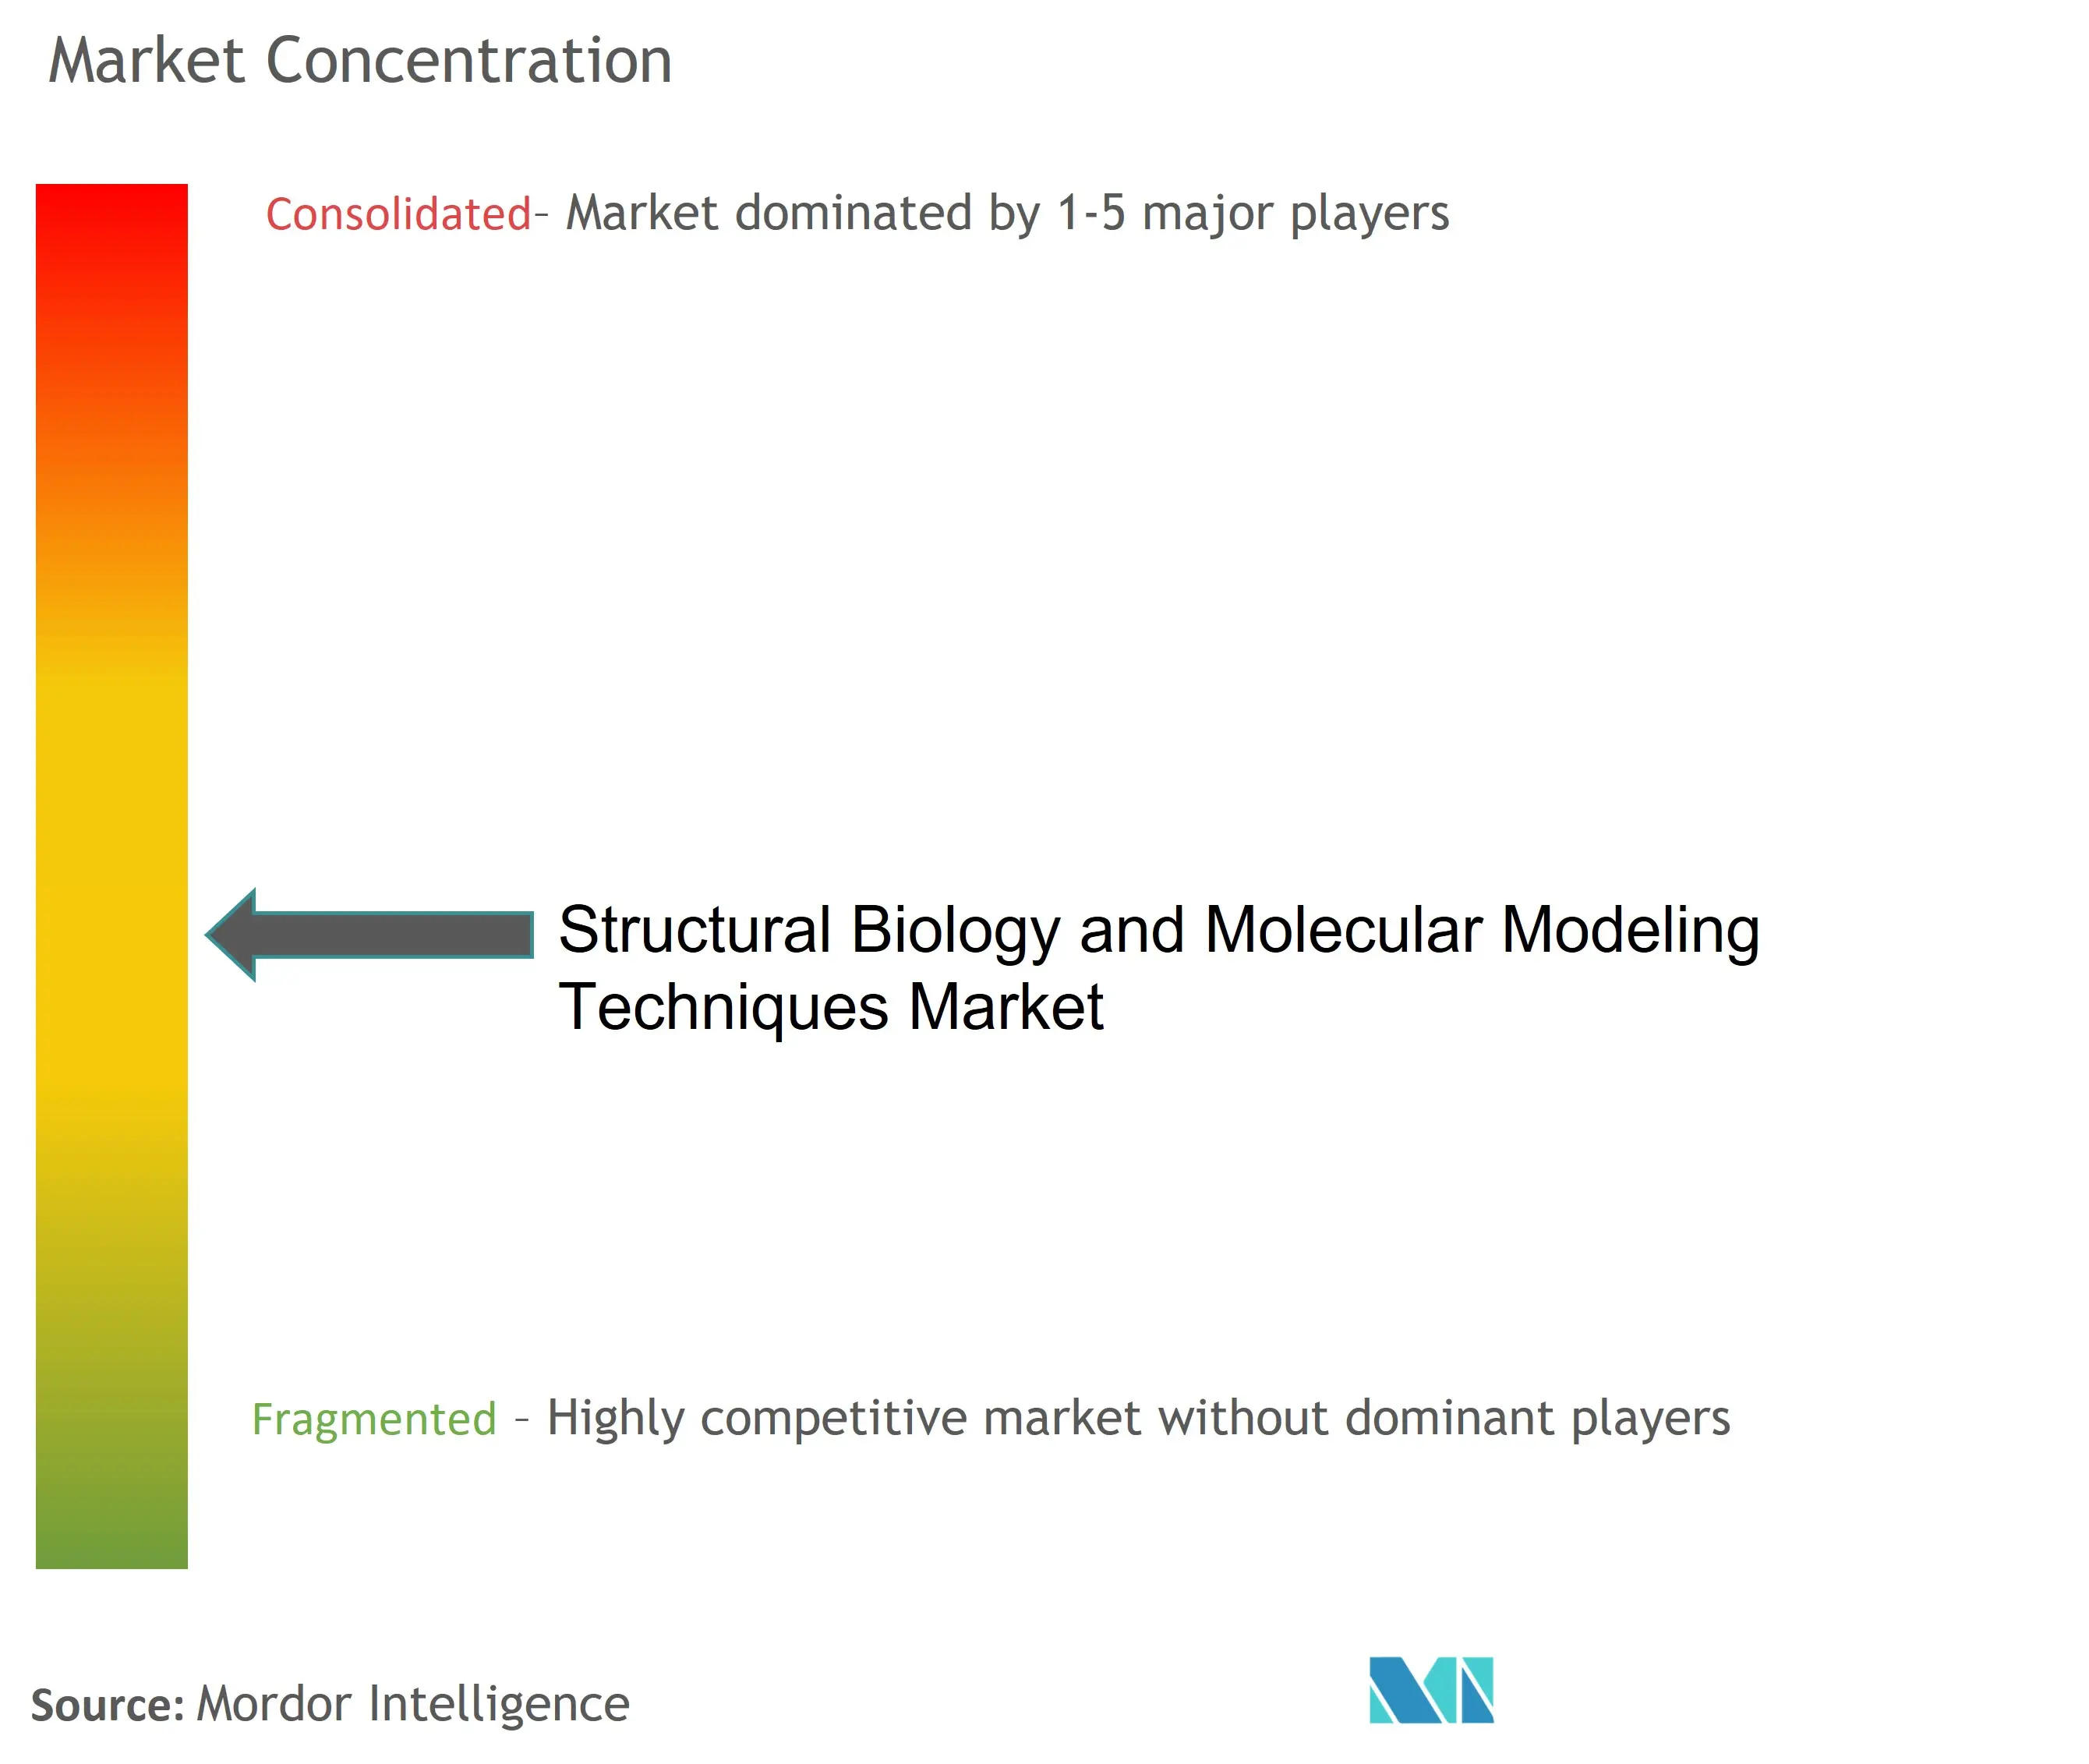 Concentración de mercado de técnicas de modelado molecular y biología estructural